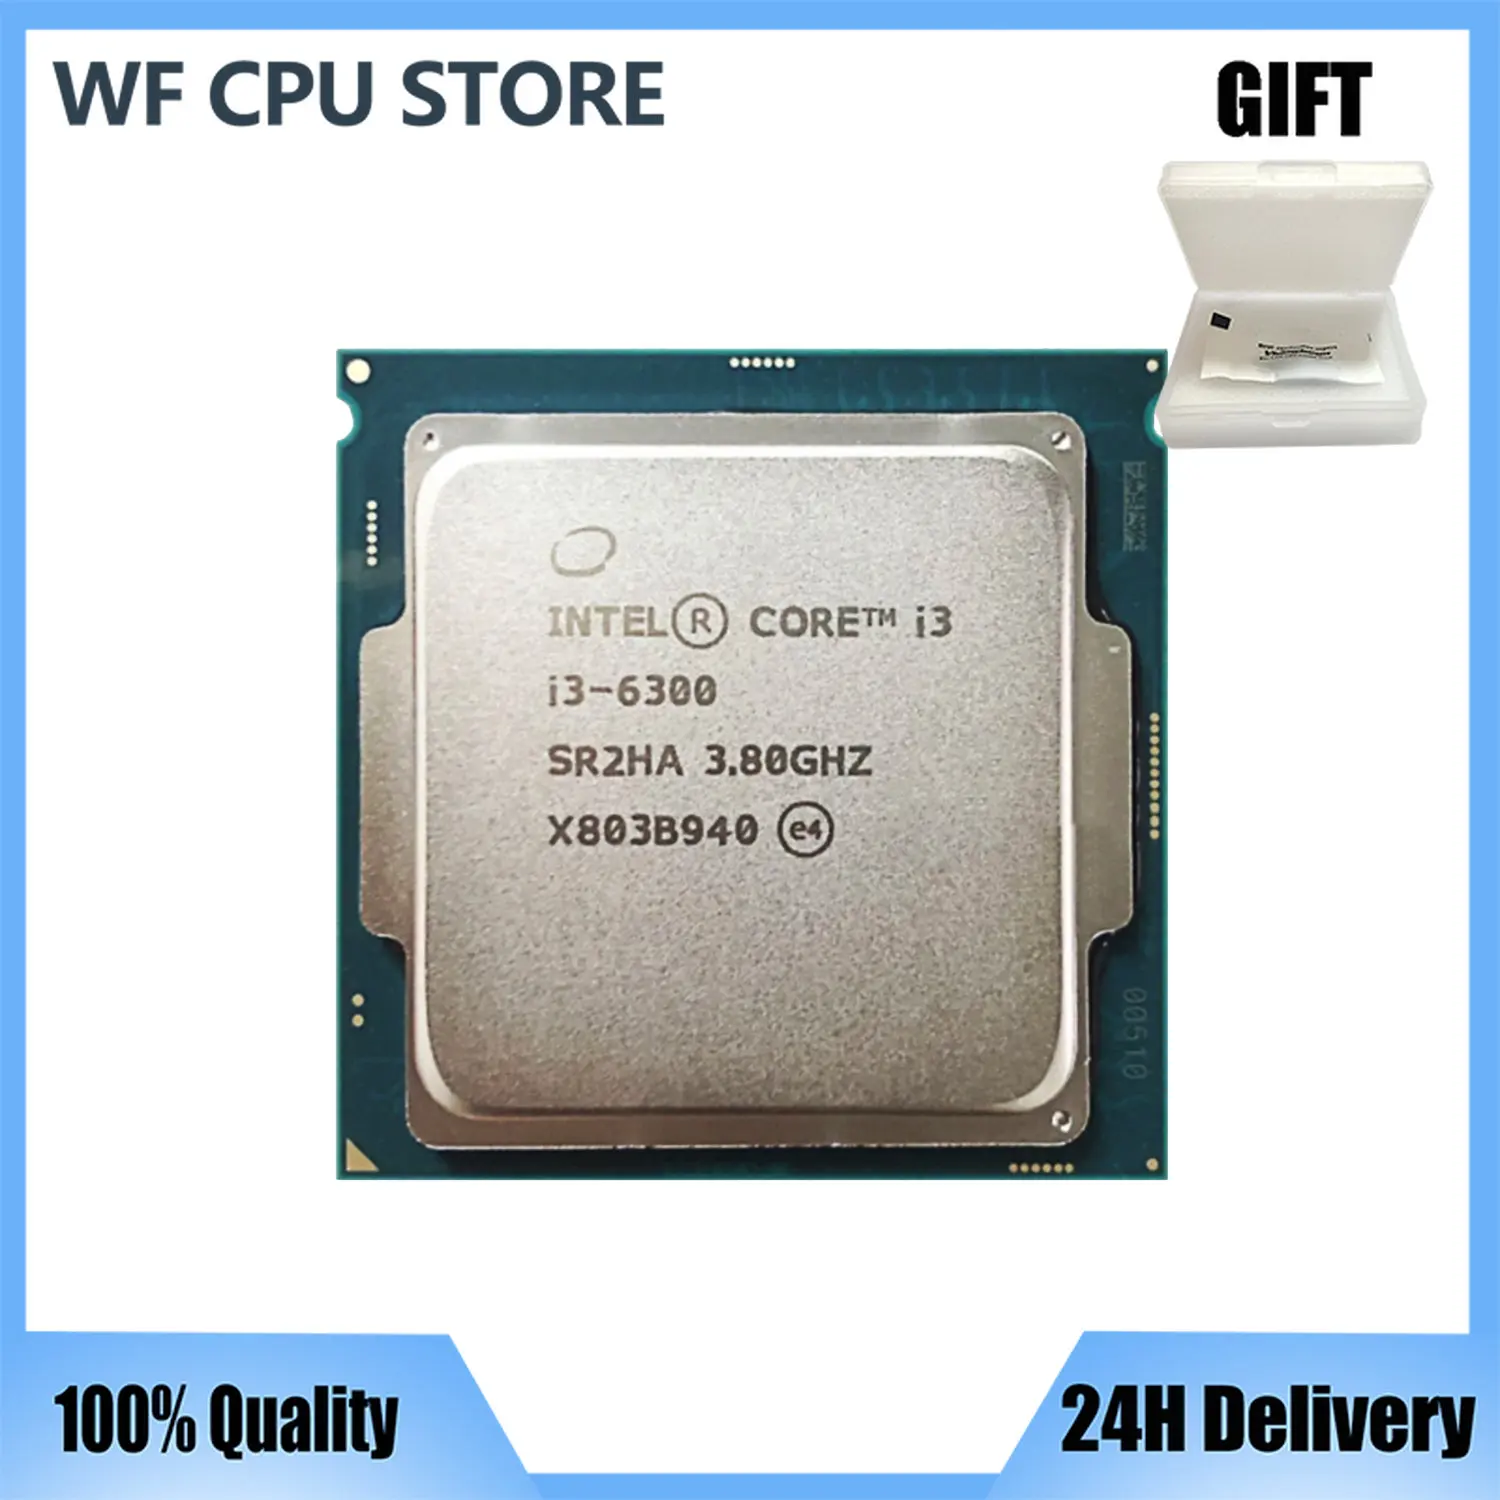 

Процессор Intel Core i3-6300 i3 6300 3,8 ГГц двухъядерный четырехпоточный, 4 Мб, 51 Вт, LGA 1151